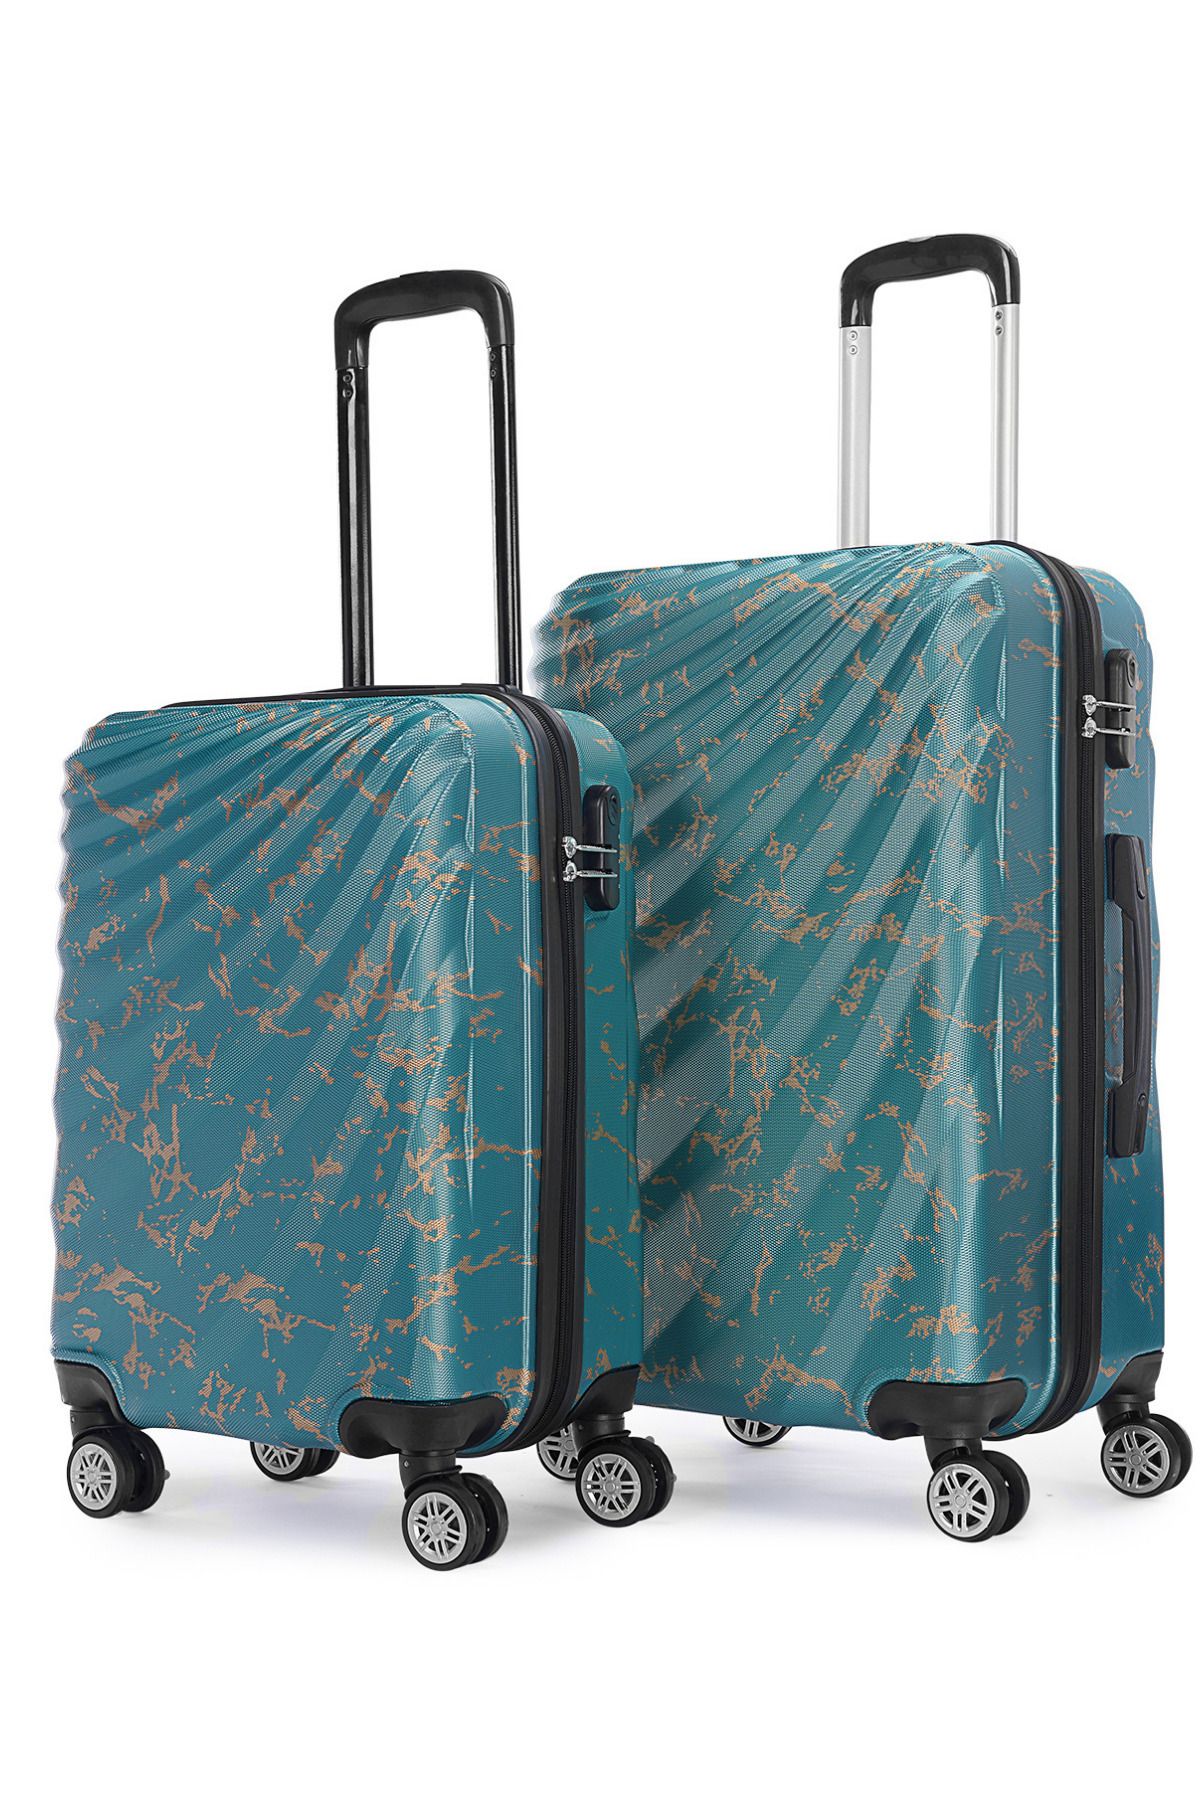 Wexta WX-300 Baskılı Mint Yeşili Orta & Kabin 2'li Set Valiz / Seyahat Bavulu